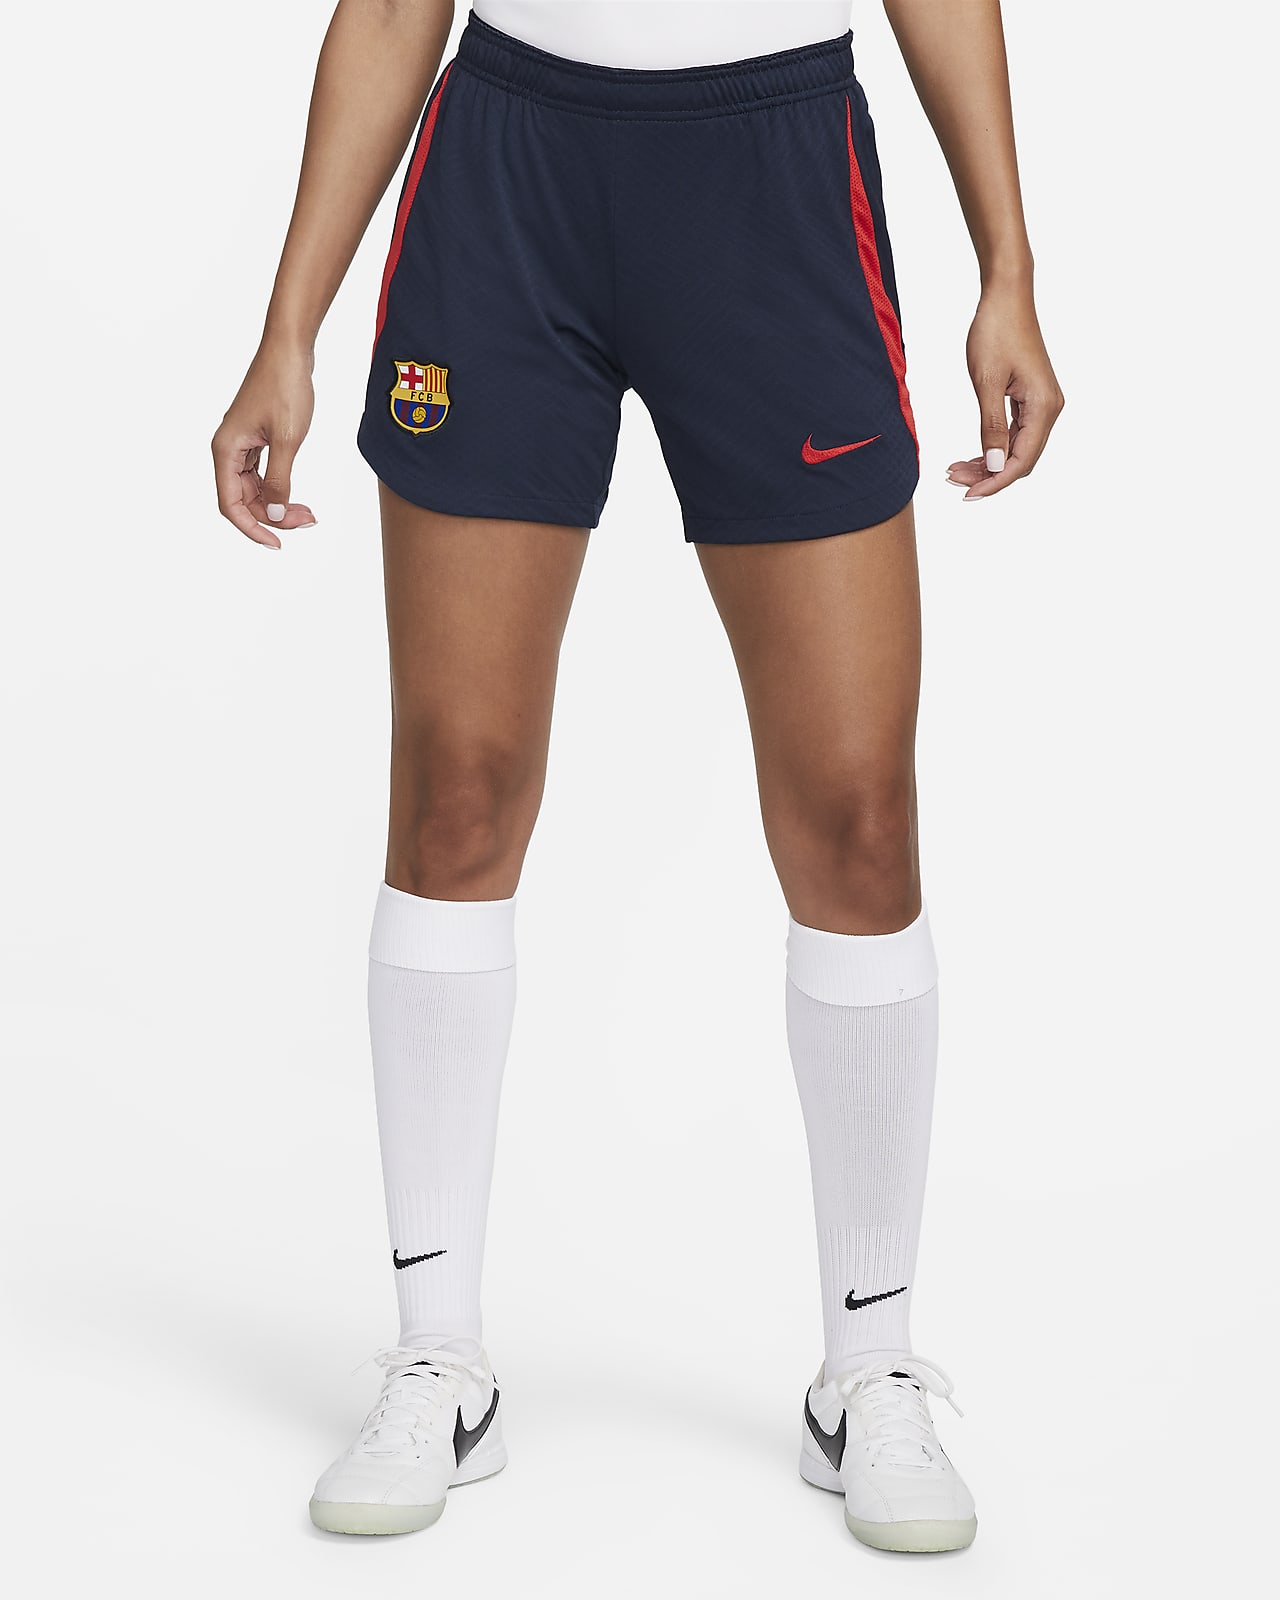 Strike Pantalón corto fútbol Nike Dri-FIT - Mujer. Nike ES